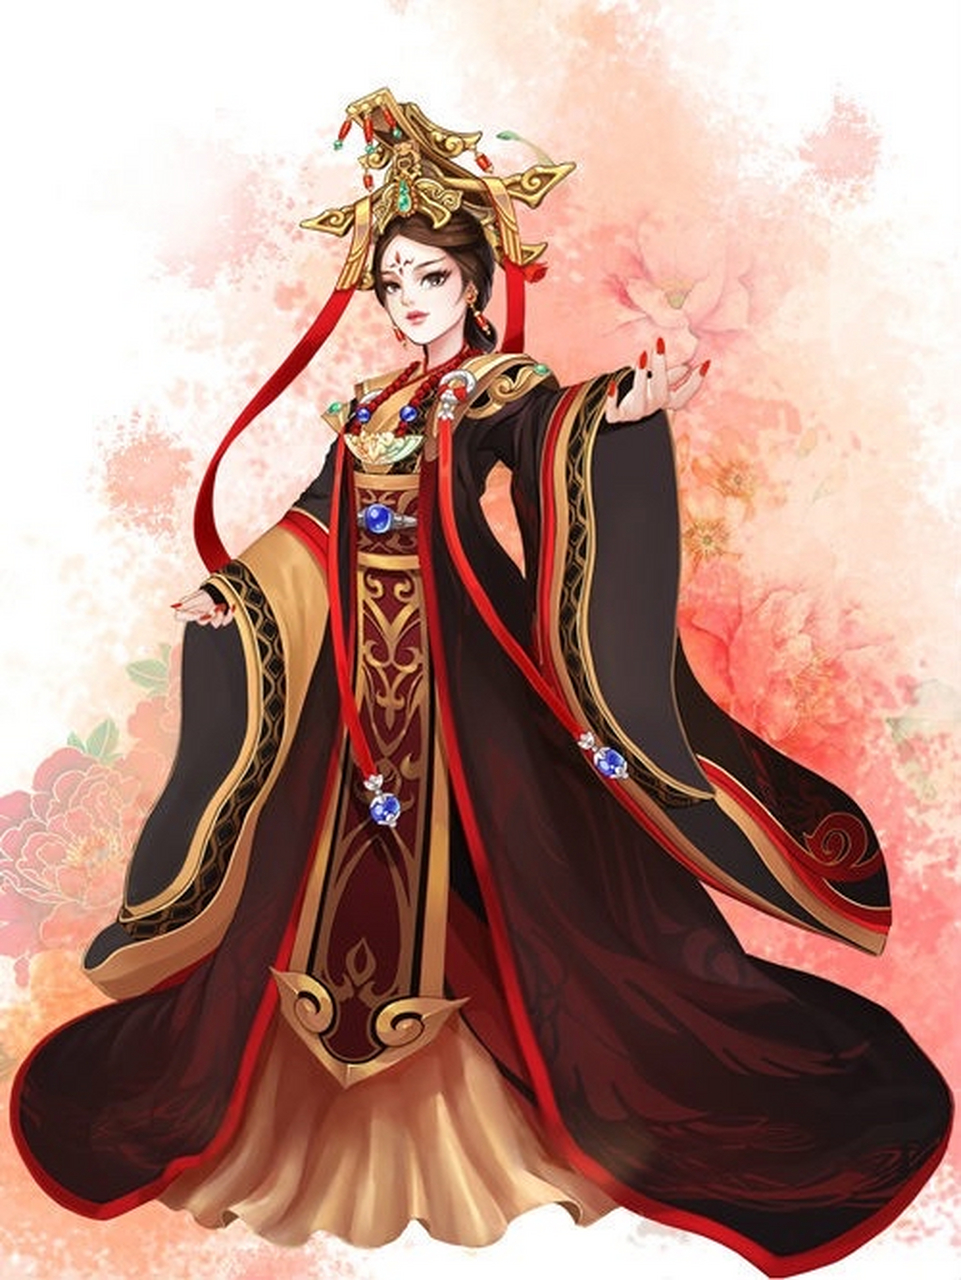 芈月是秦国的公主,出生在一个有着悠久历史的贵族家庭,自幼聪慧过人